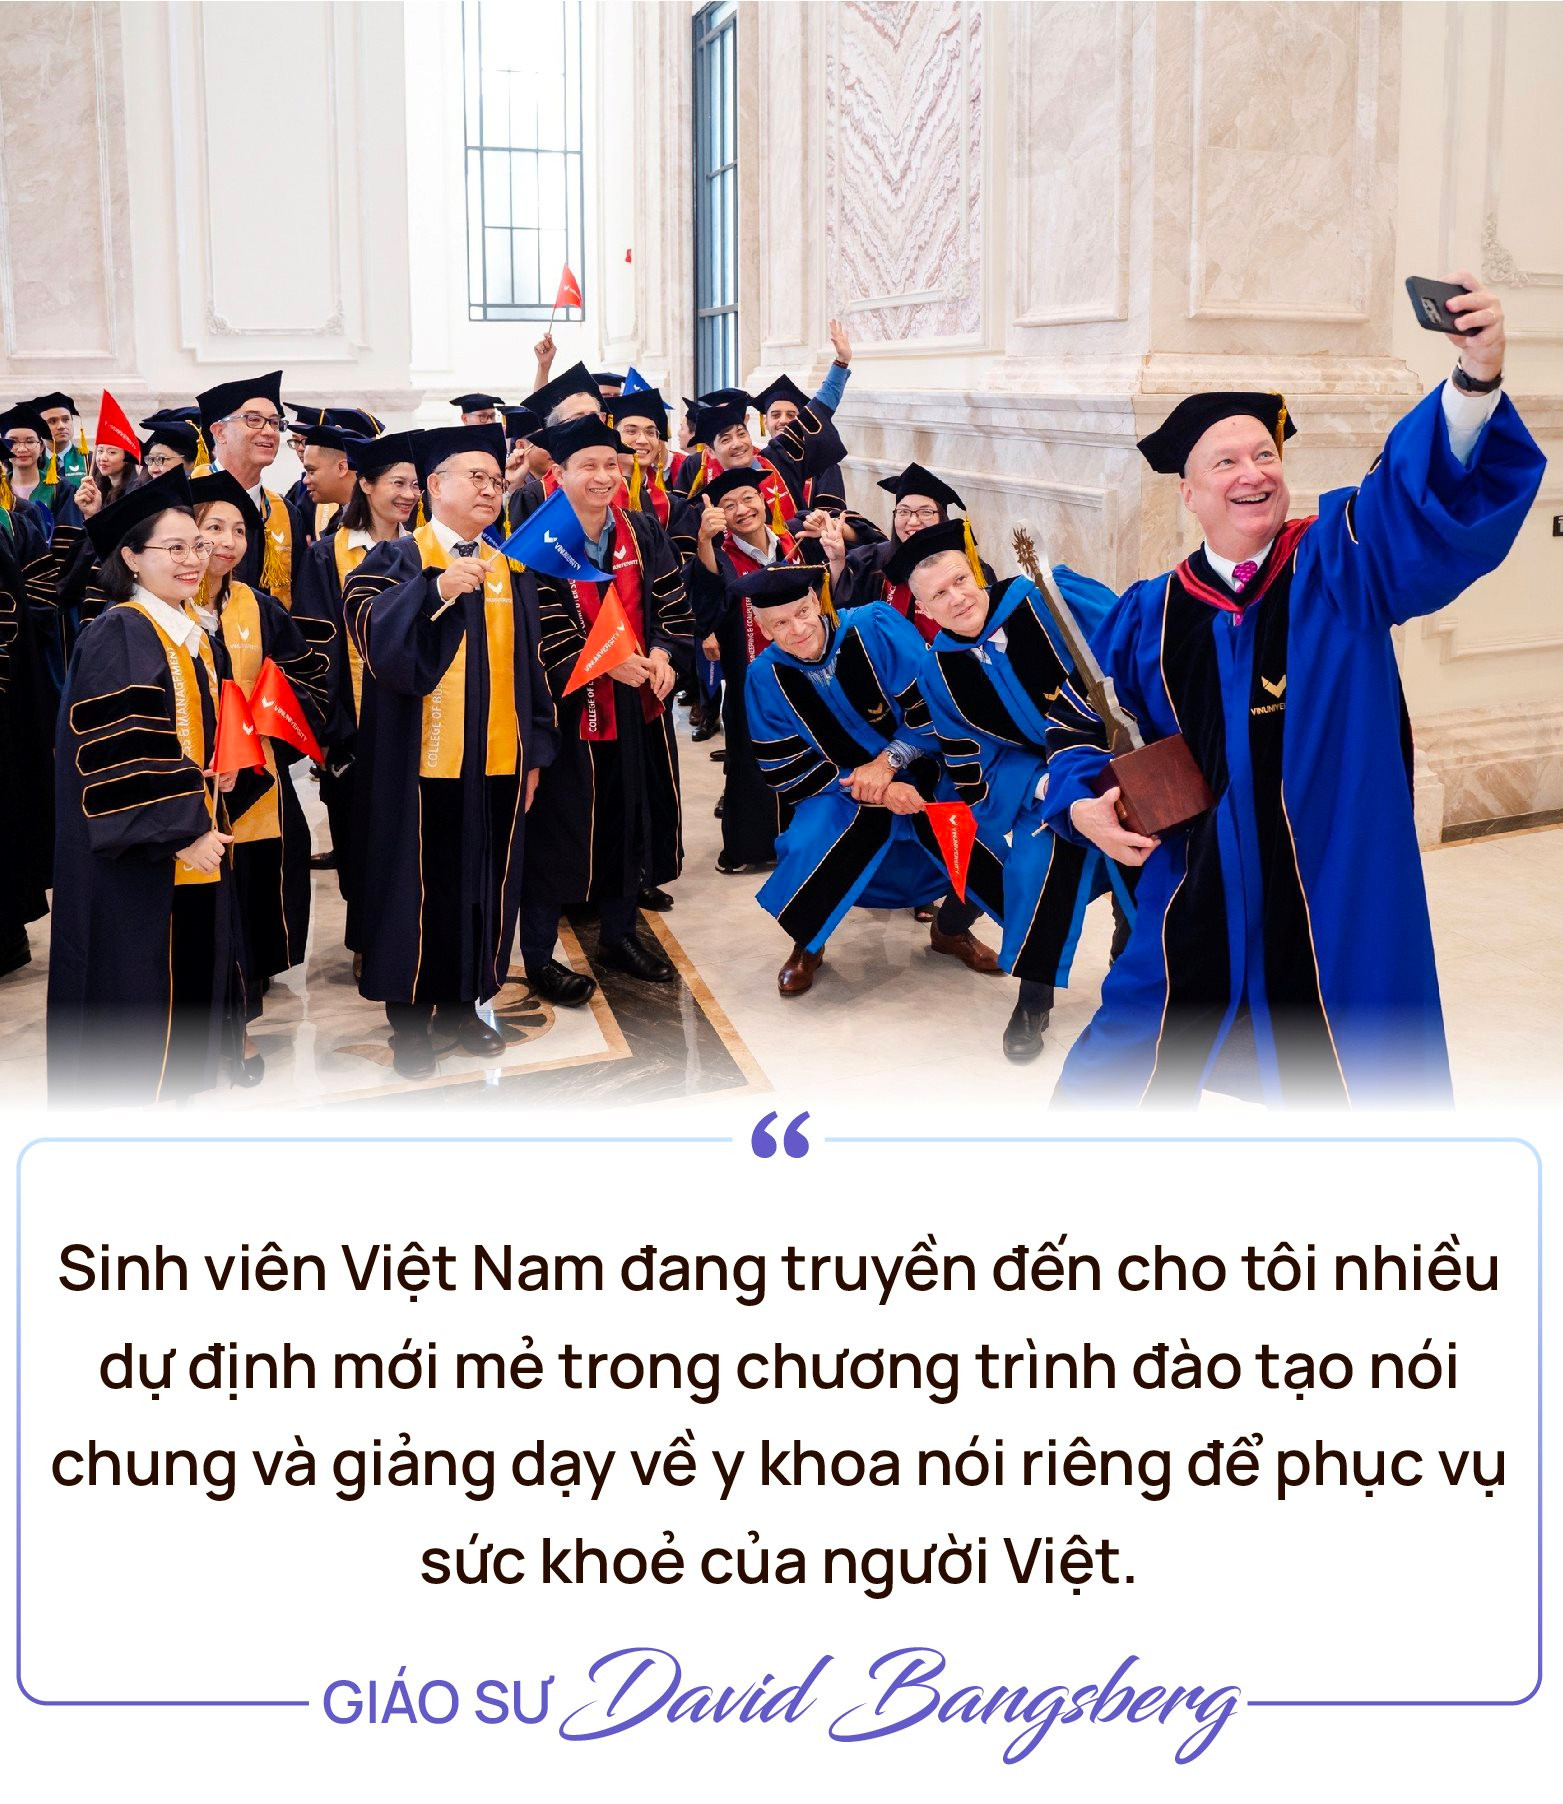 Chuyện Giáo sư Harvard “nghiện” cà phê với sinh viên Việt: Chọn sang Việt Nam phát triển giáo dục vì những lợi thế “chẳng đâu có” - Ảnh 4.